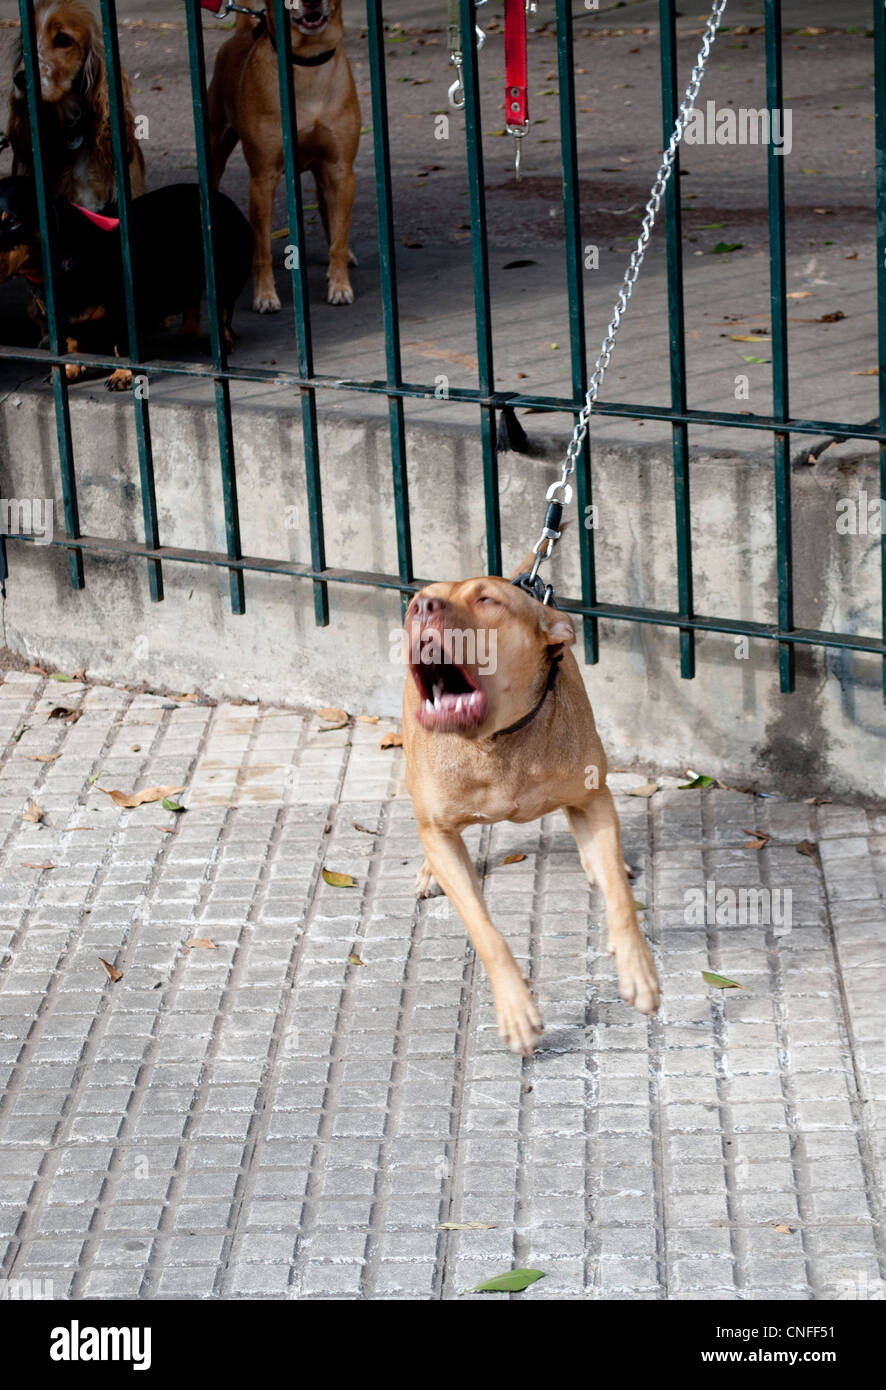 angry dog Stock Photo